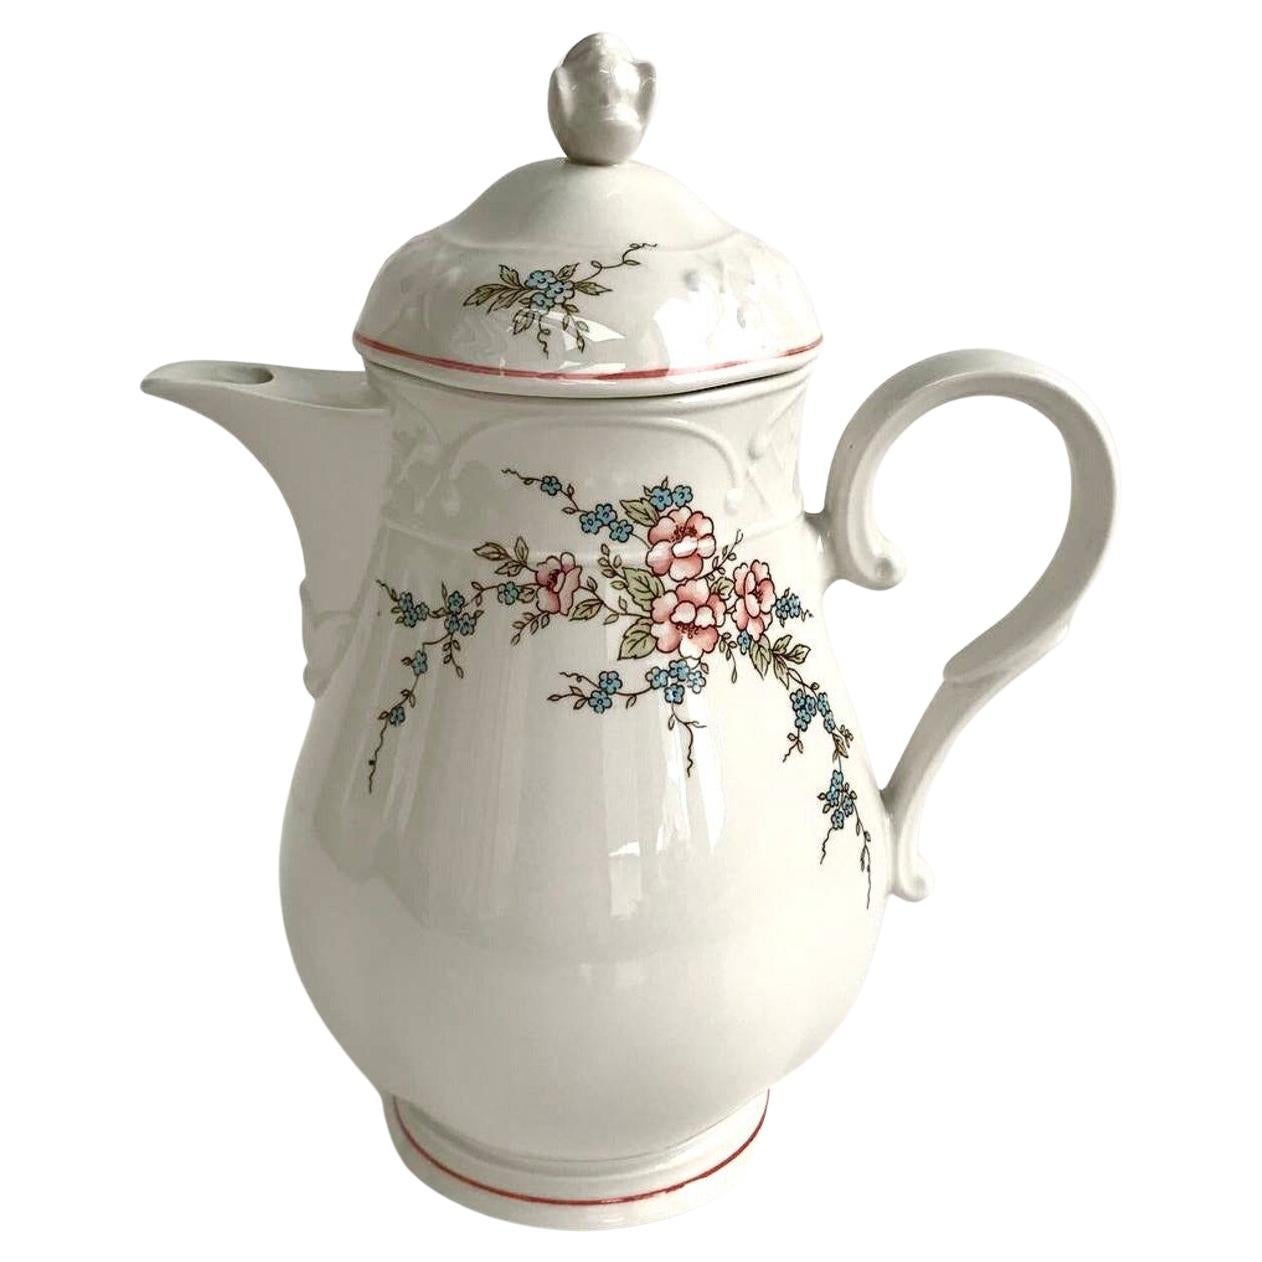 Vintage Villeroy & Boch Rosette Teapot  Porcelain Teapot with Flowers For Sale